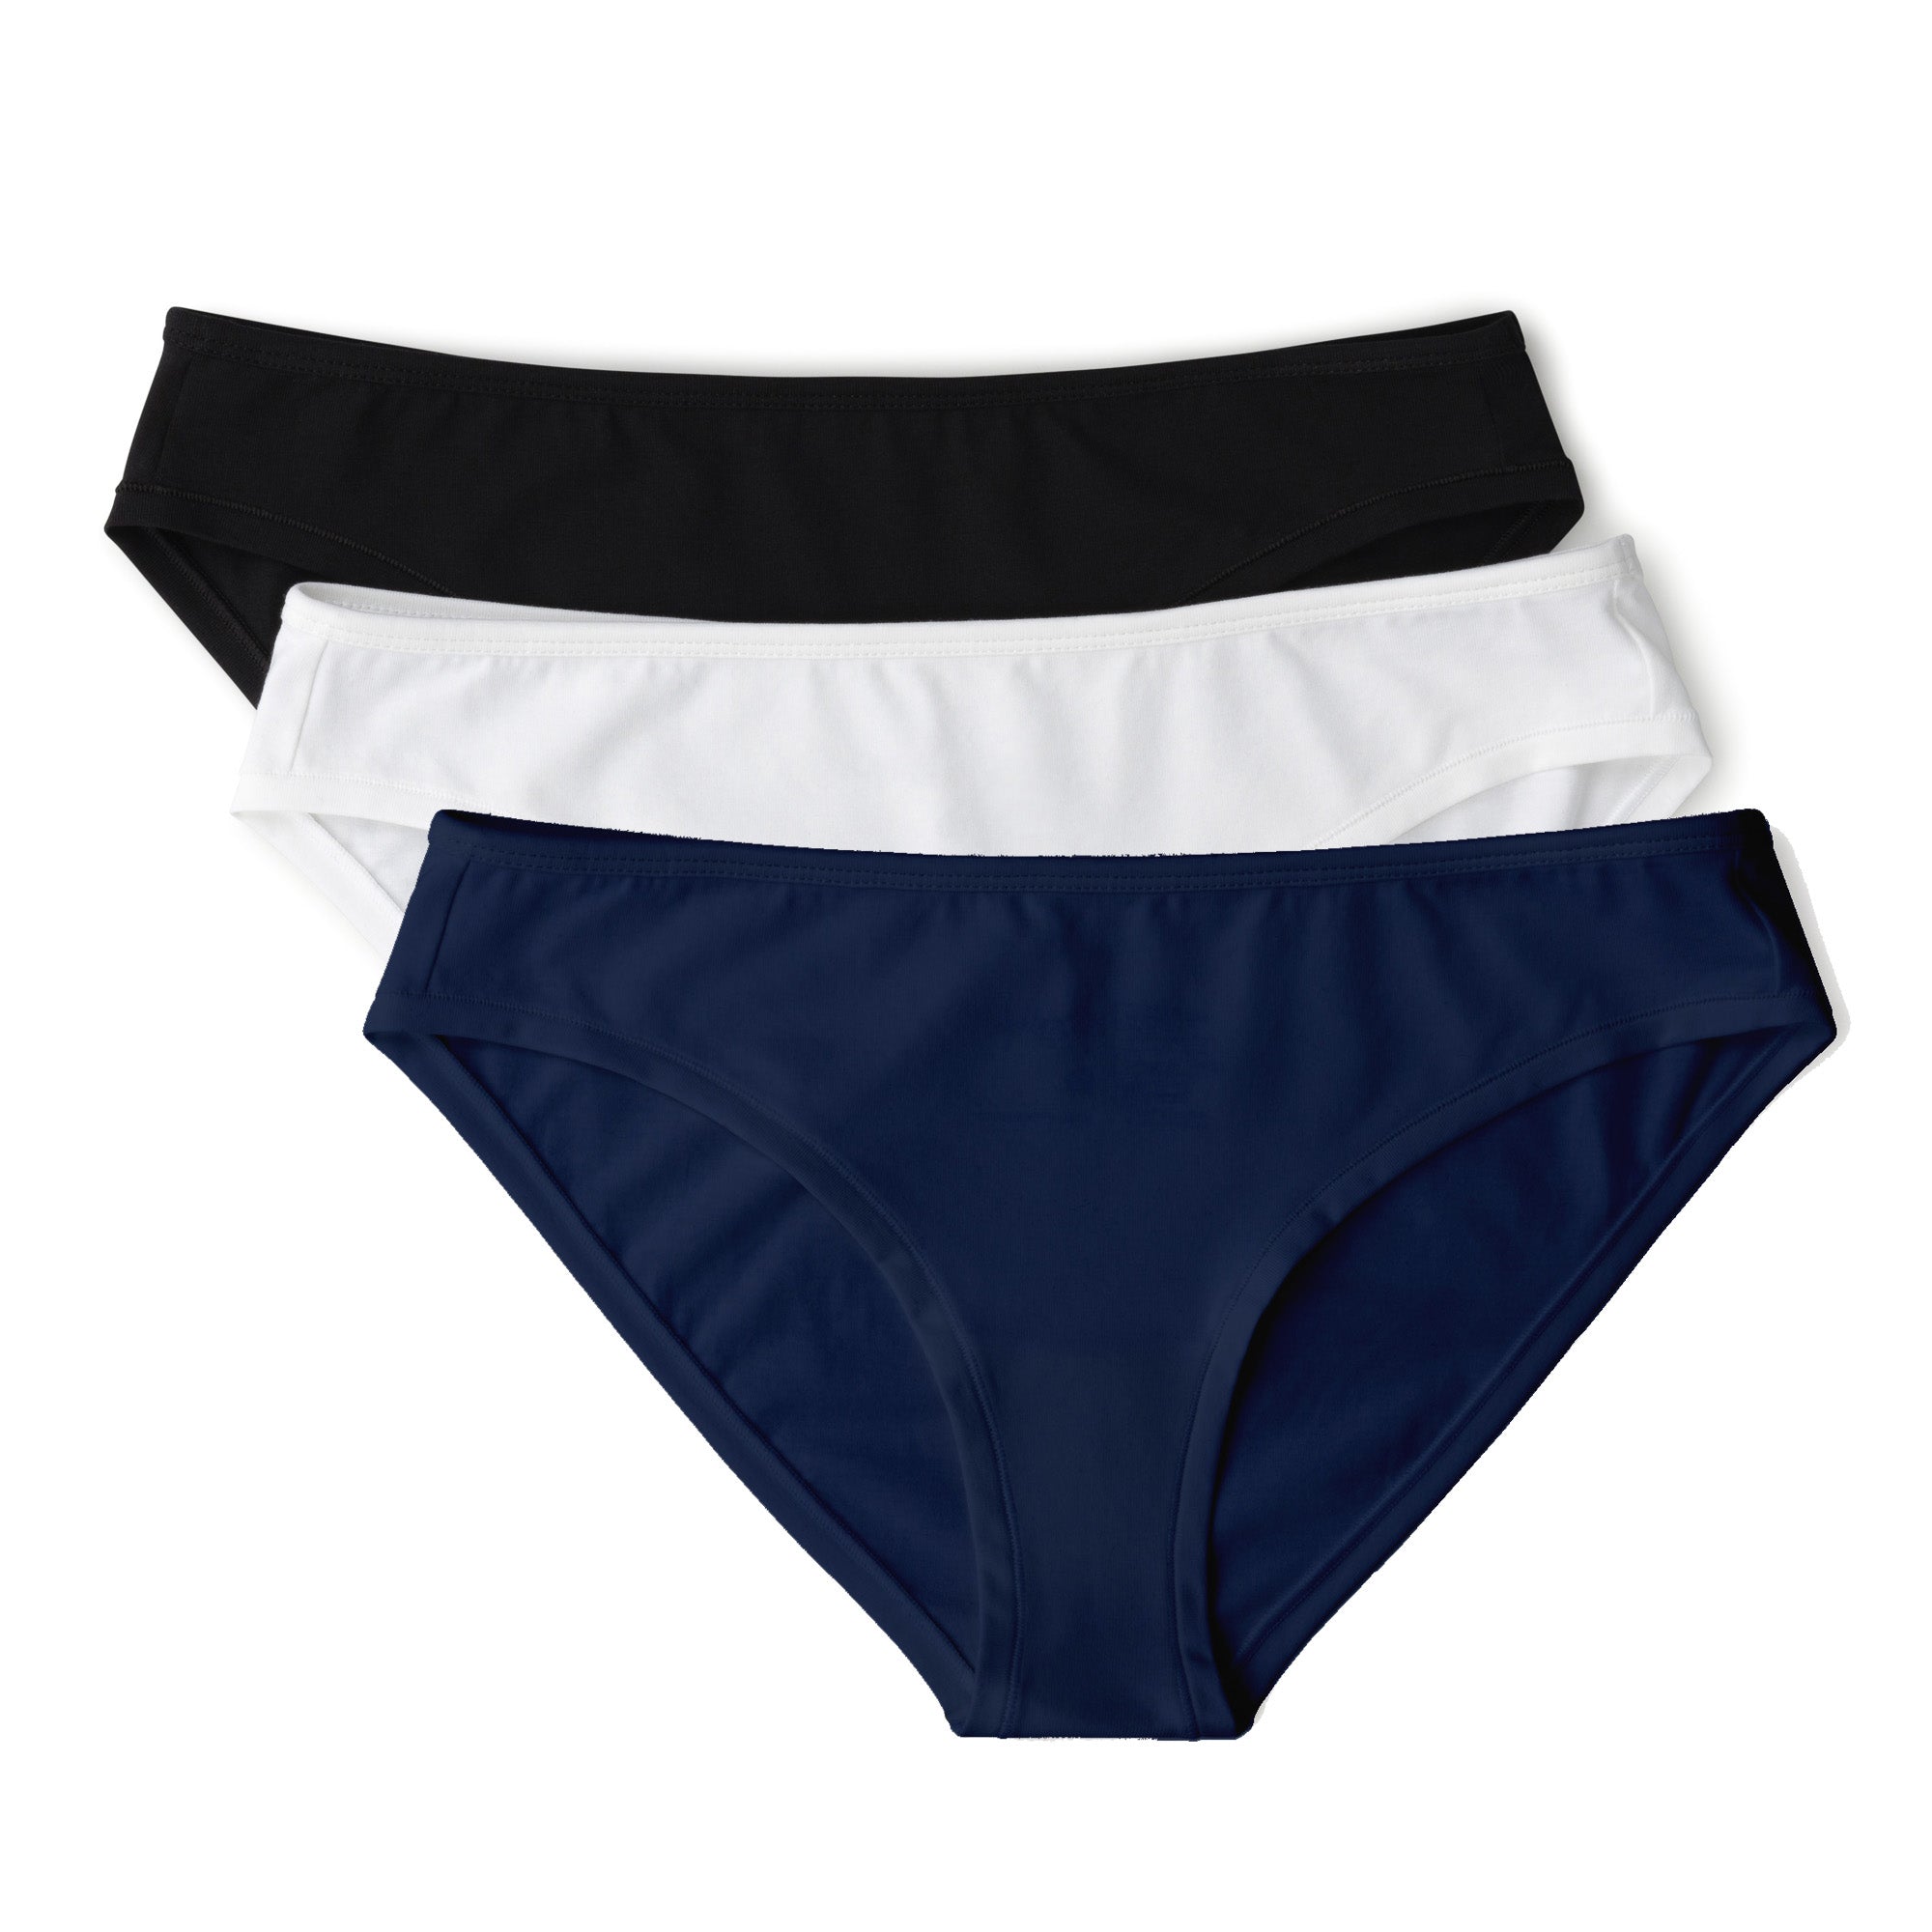 Panties Blue K-11 Ladies Underwear, Mid, Size: Medium at best